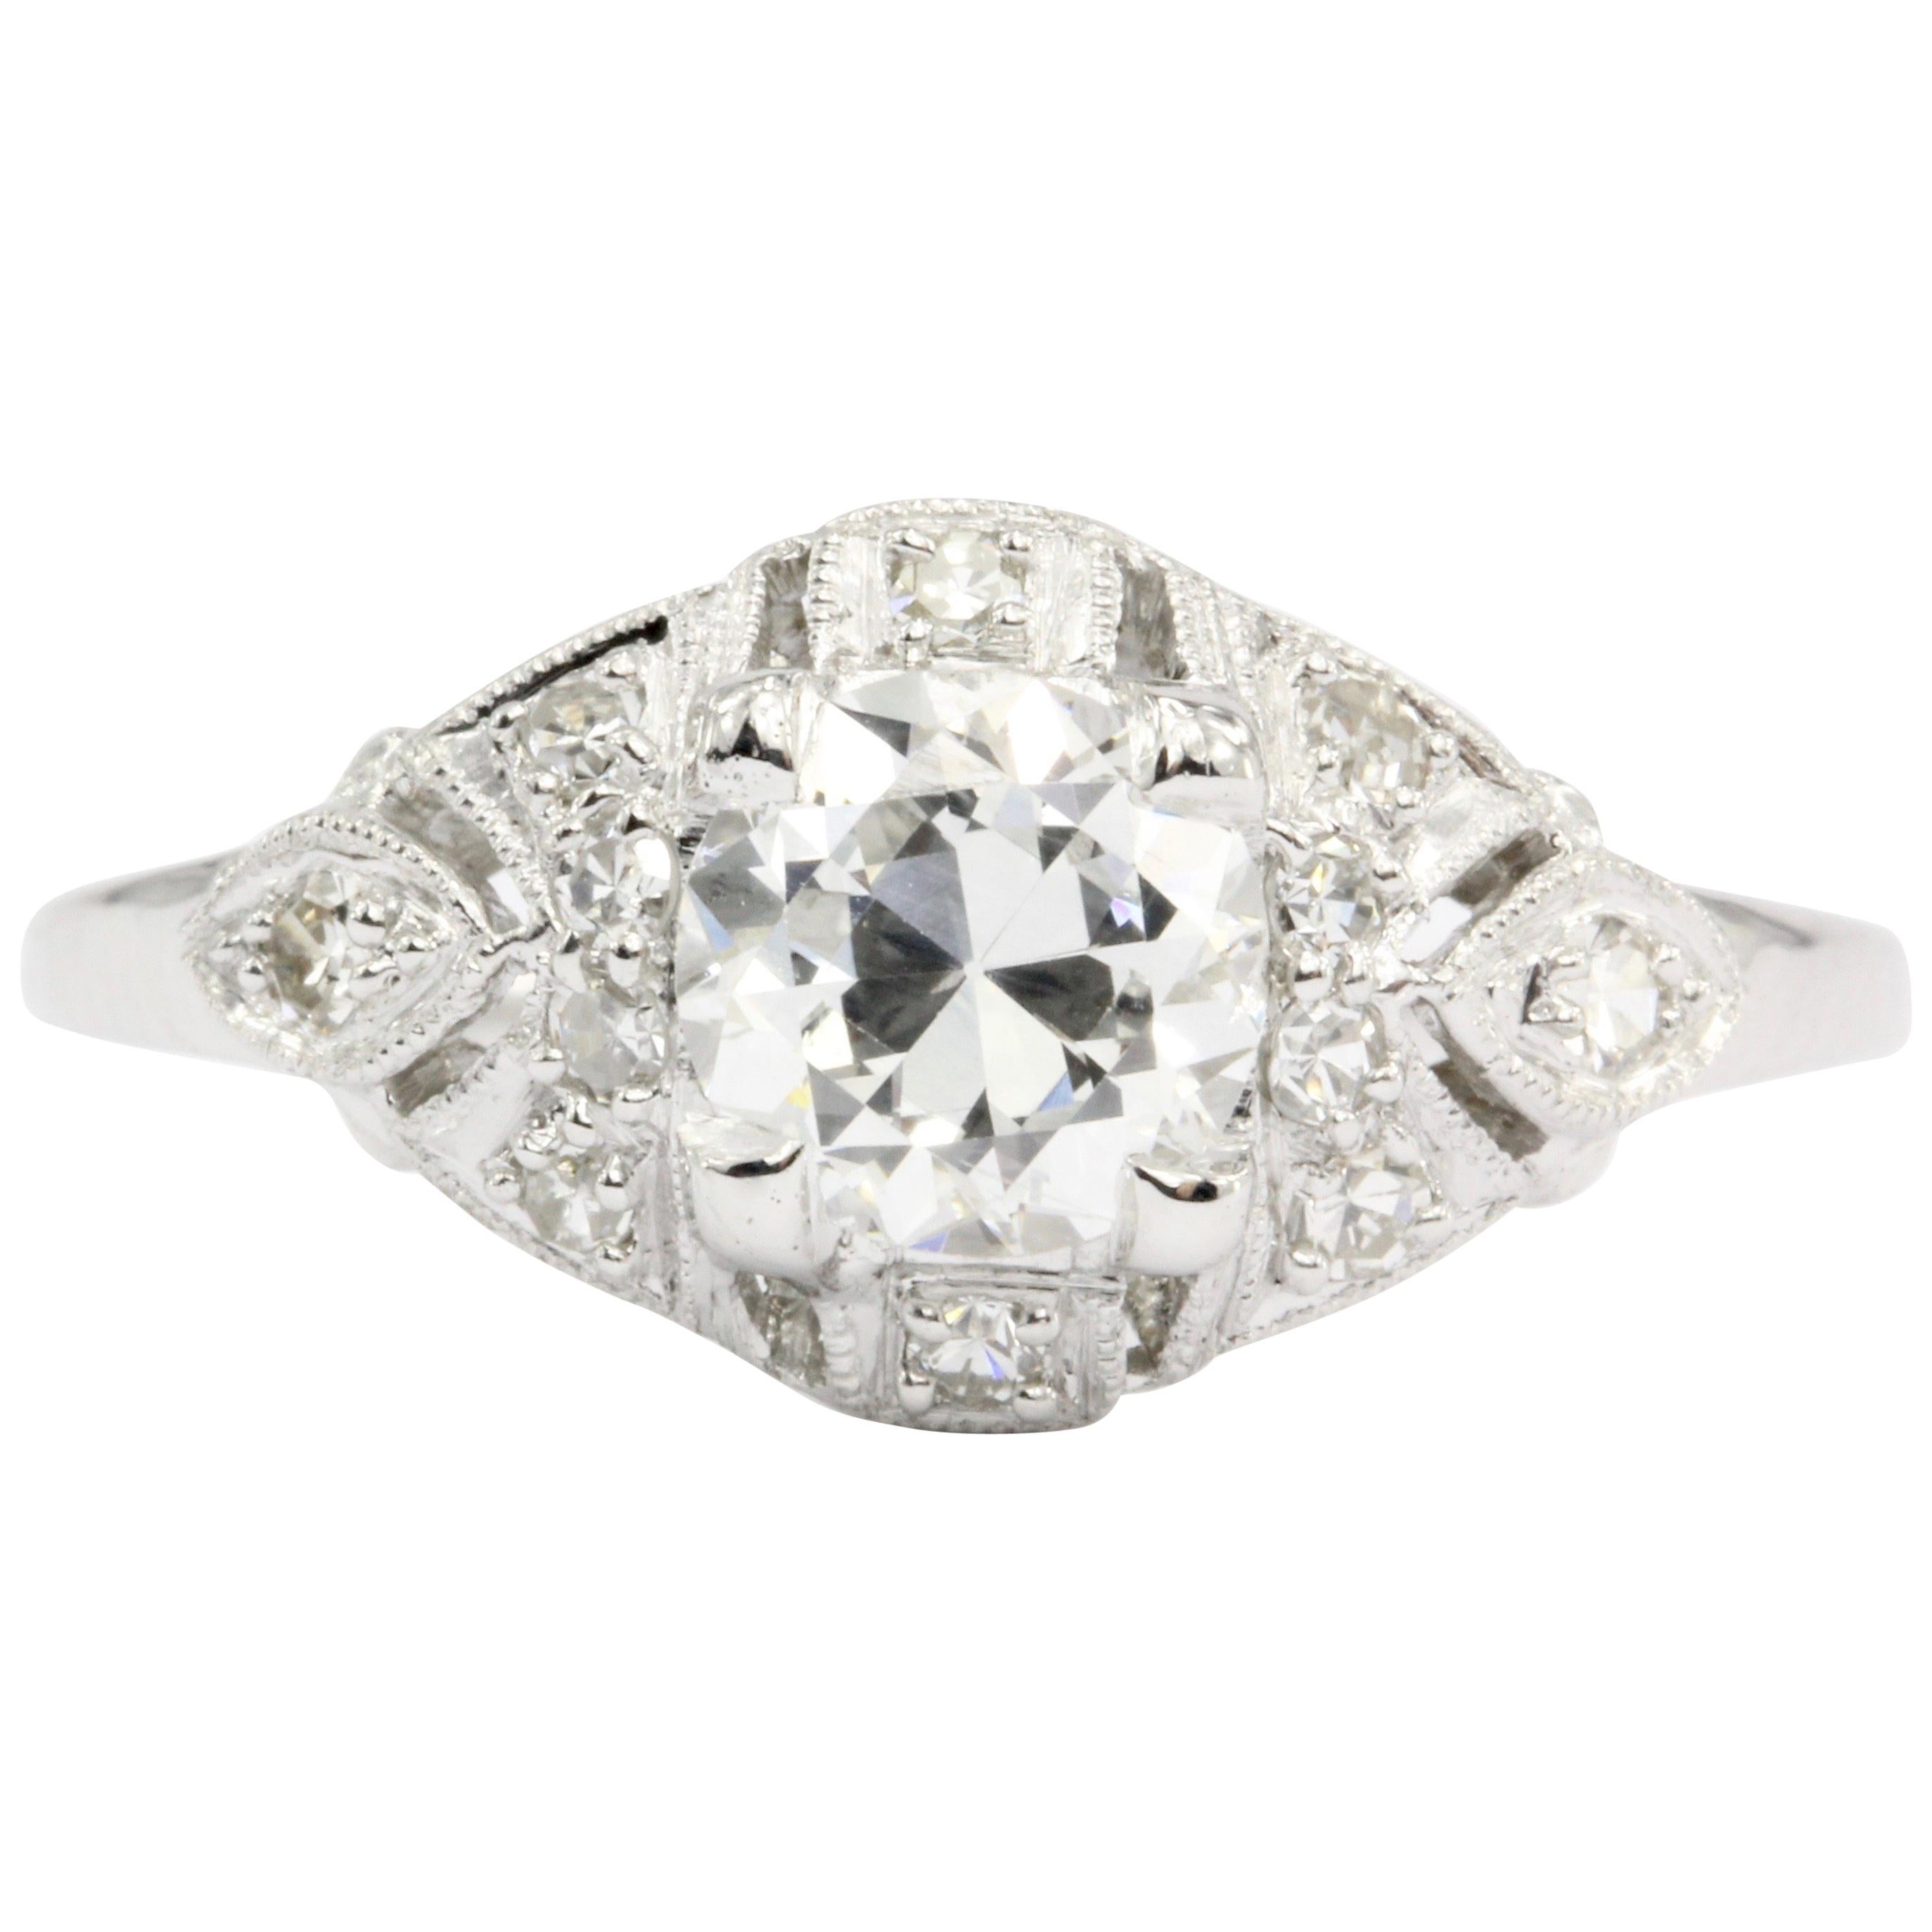 Platinum Art Deco Old European Cut Diamond Engagement Ring, circa 1920s